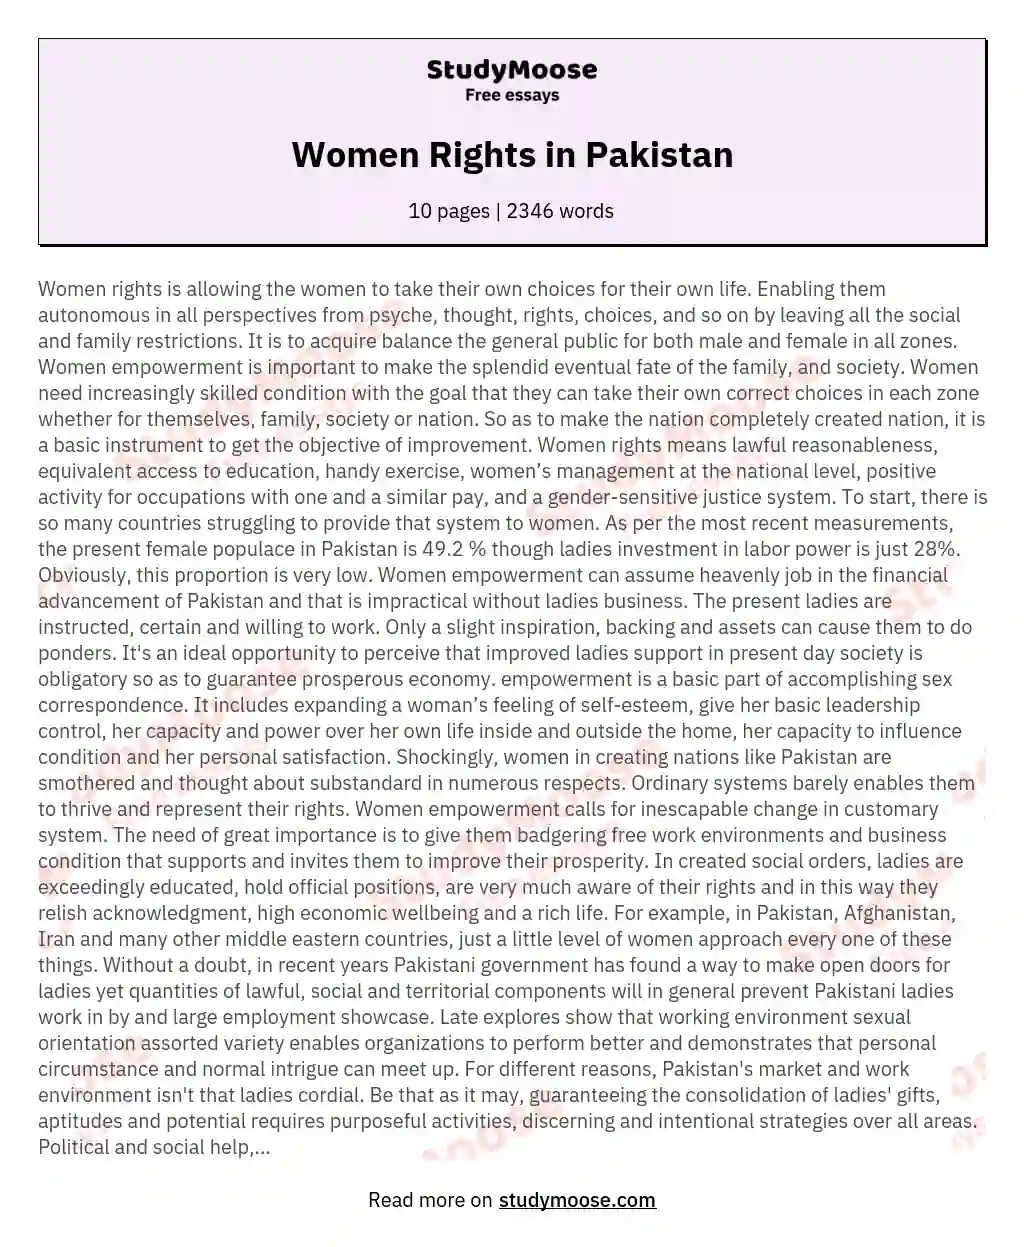 Women Rights in Pakistan